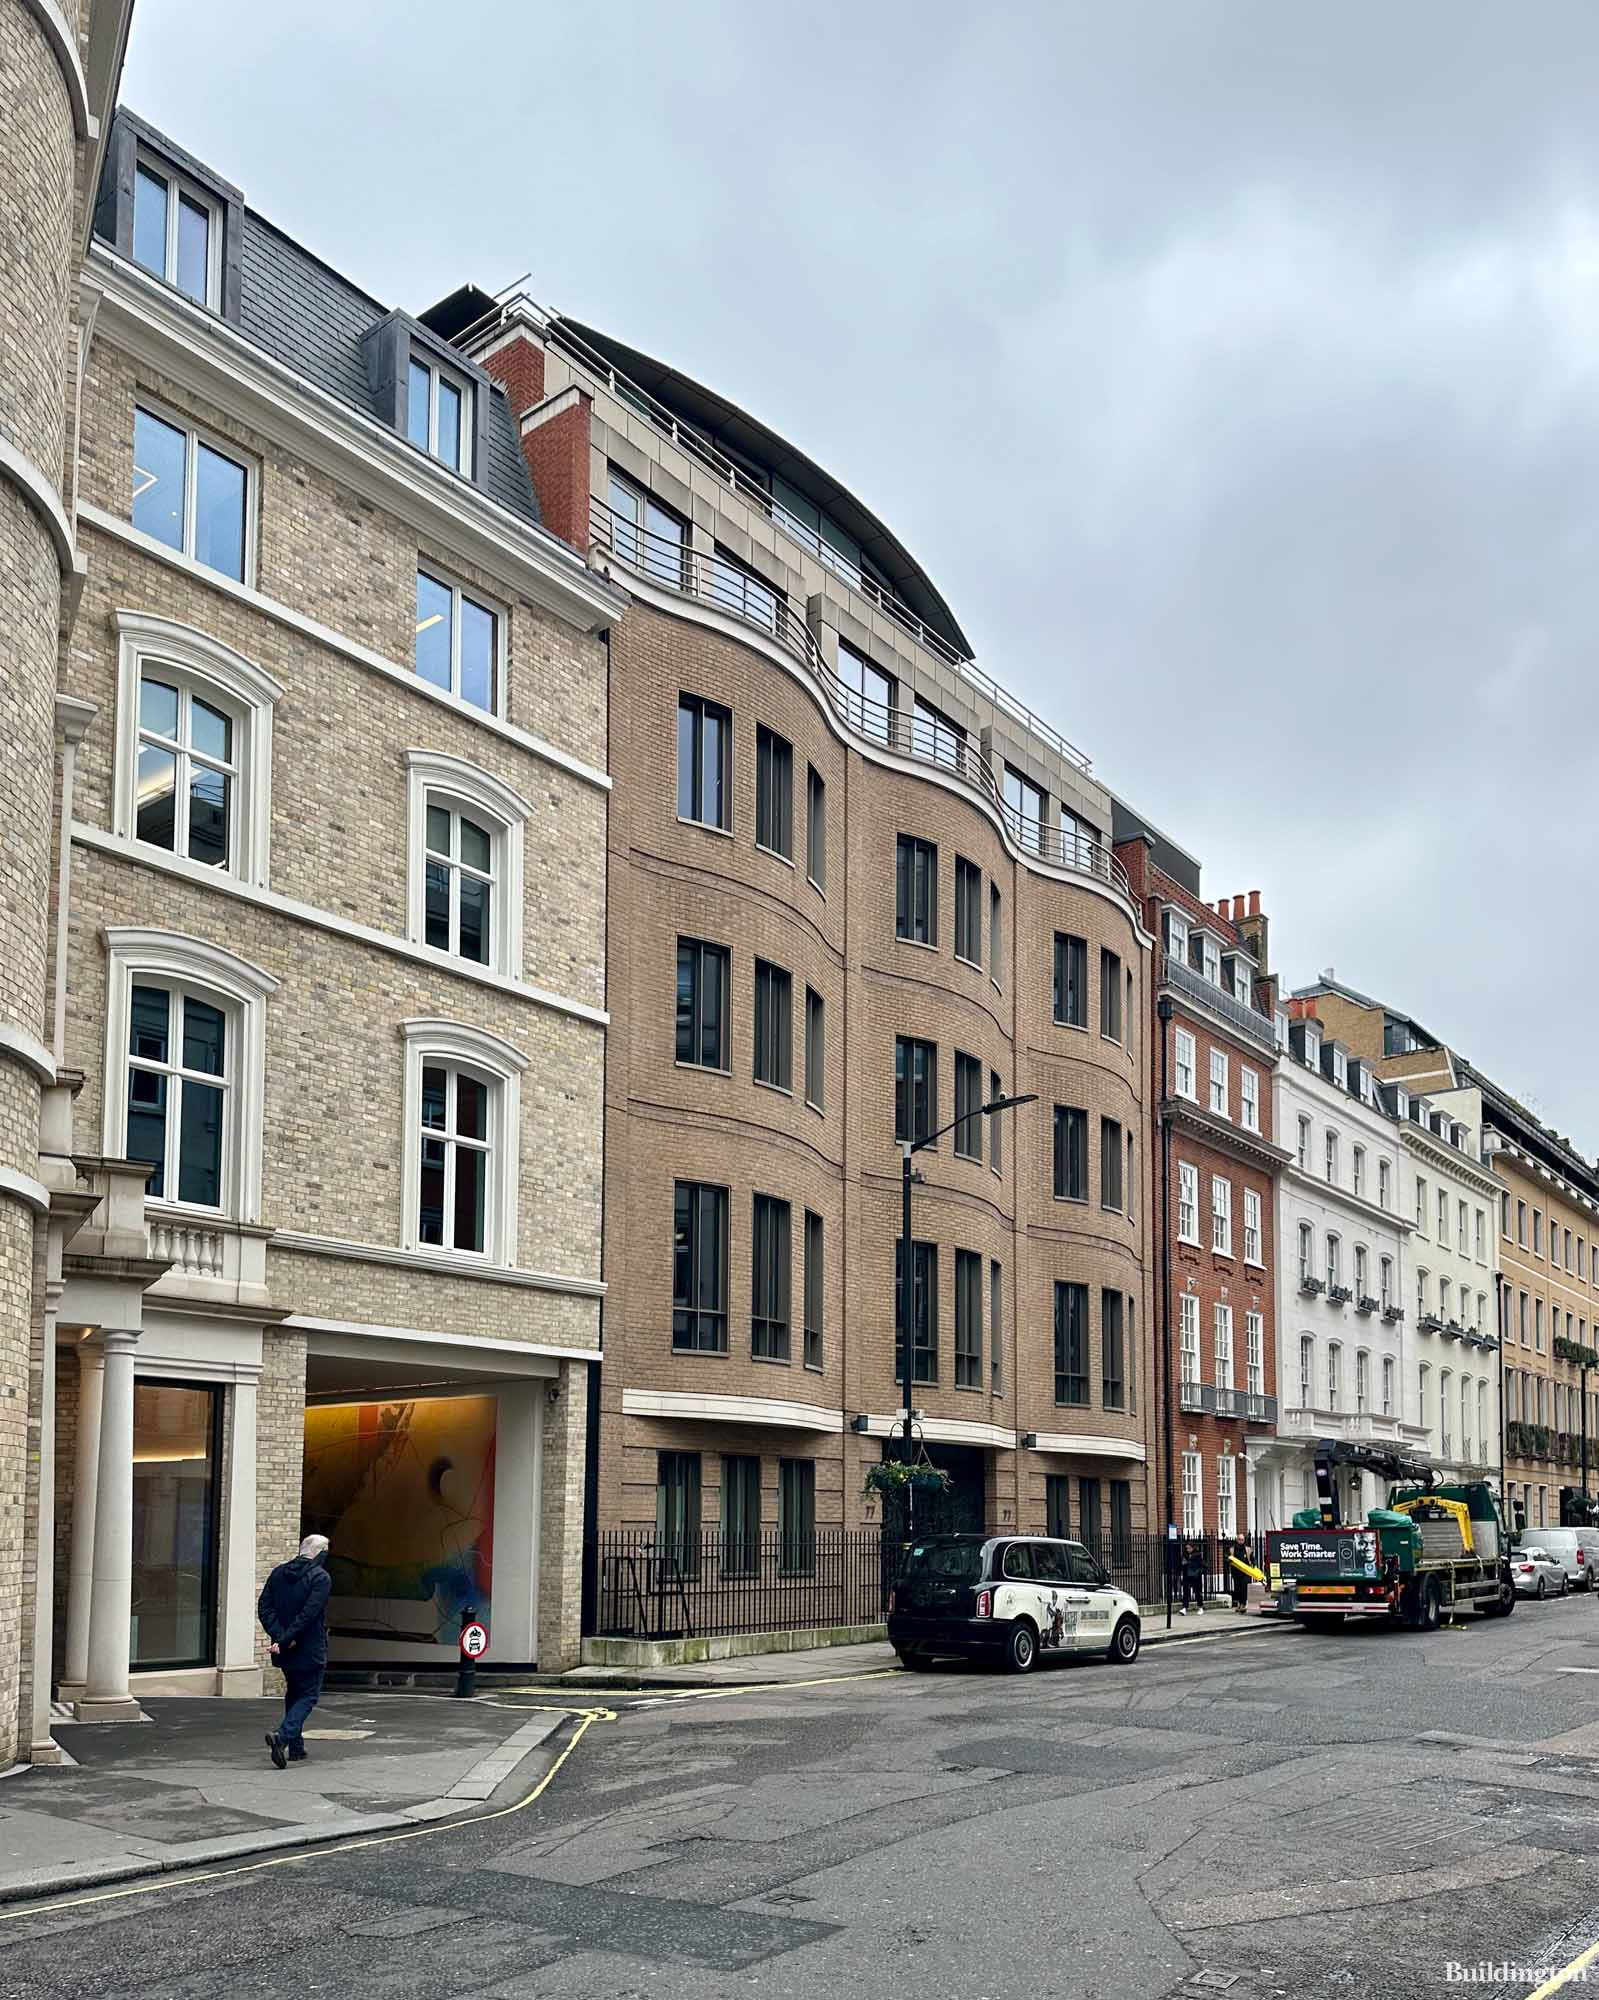 77 Grosvenor Street is an office building in Mayfair, London W1.